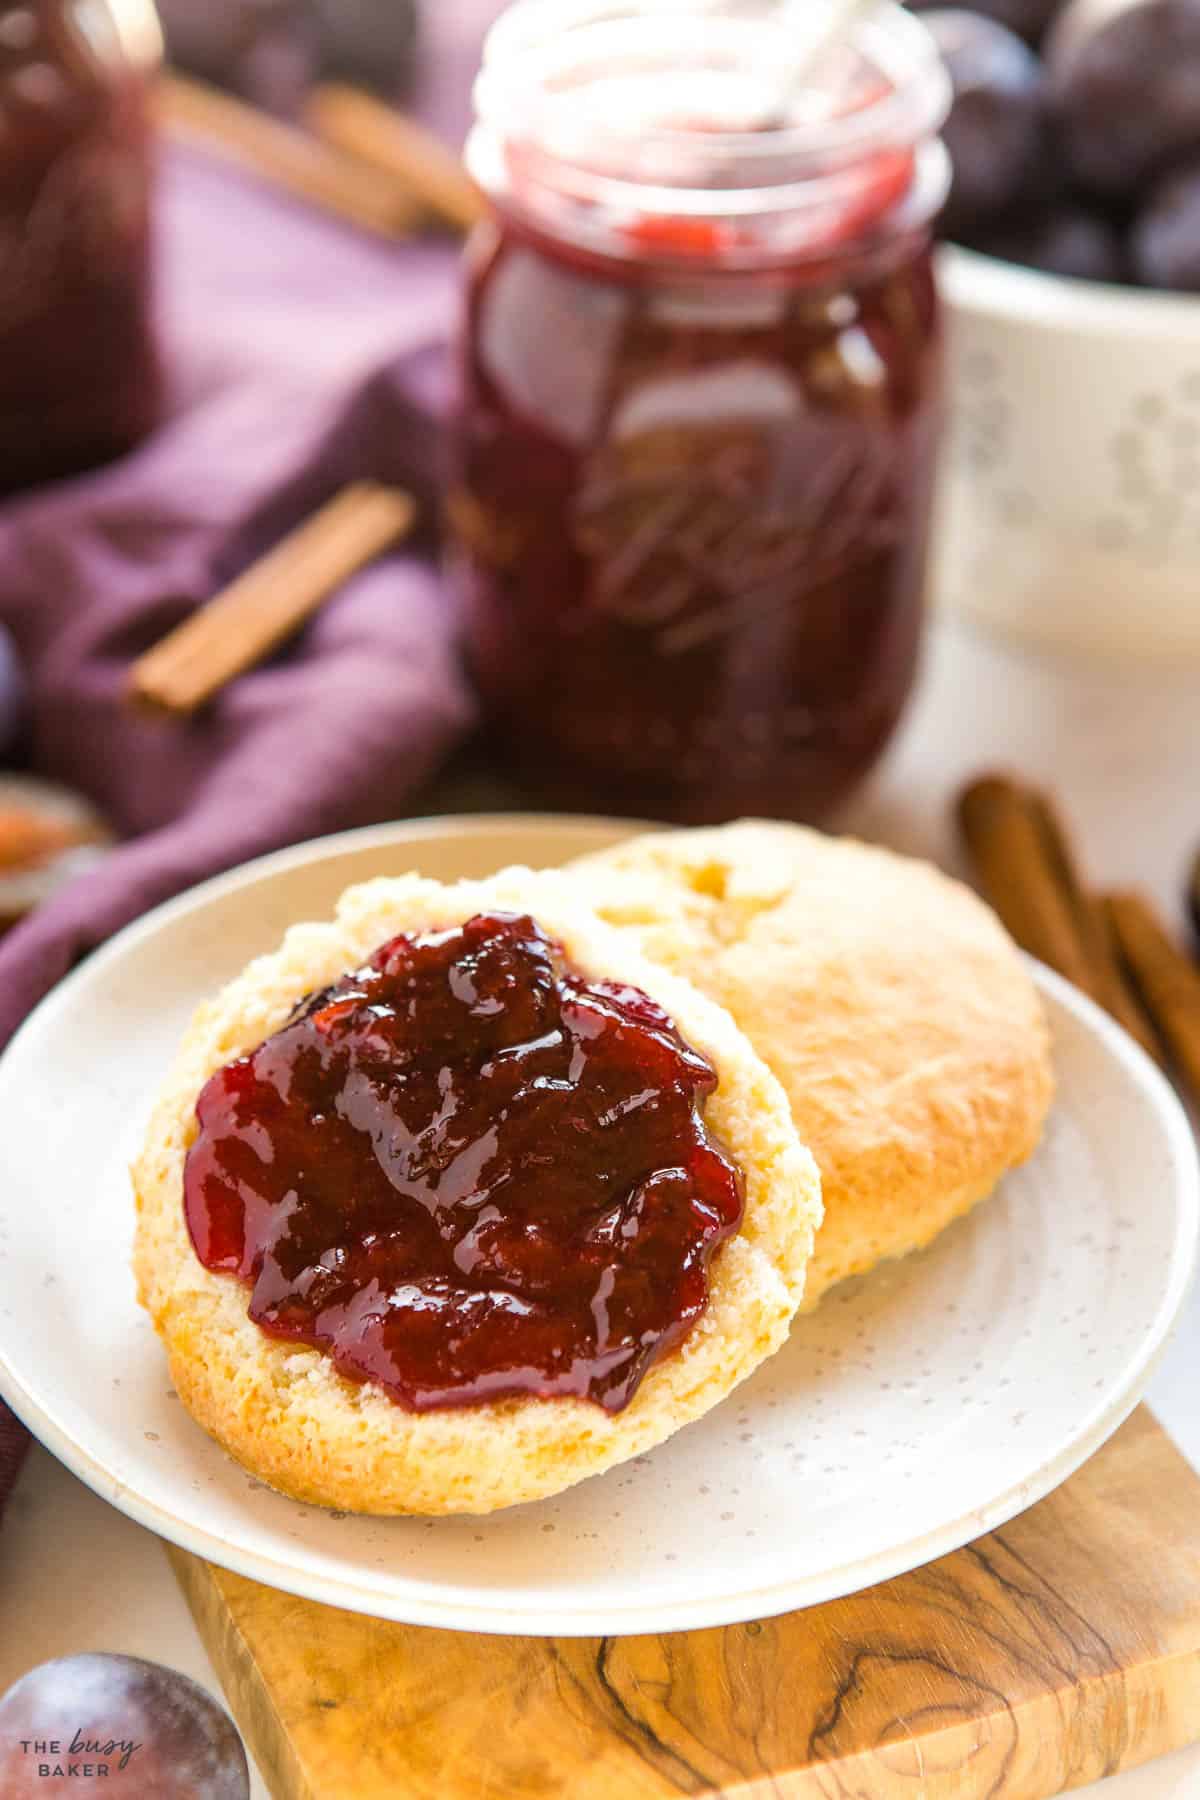 homemade plum jam spread on a homemade scone